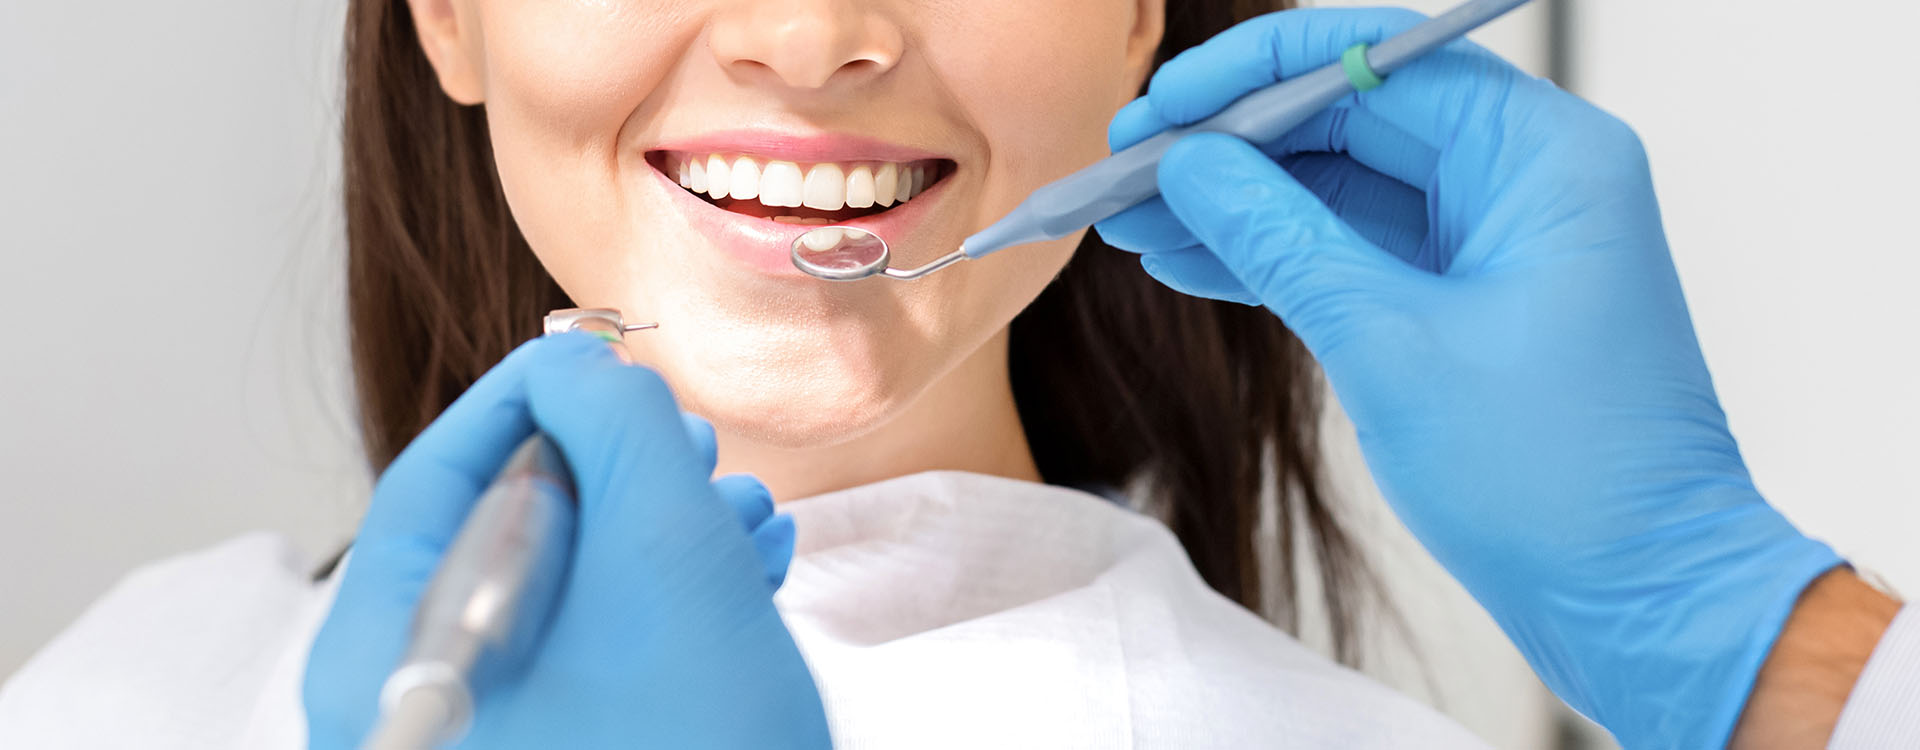 Clínica Dental Andrea Compte, tu Centro Odontológico especializado. Odontología en Alcossebre. Mujer realizándose un tratamiento en una clínica dental.